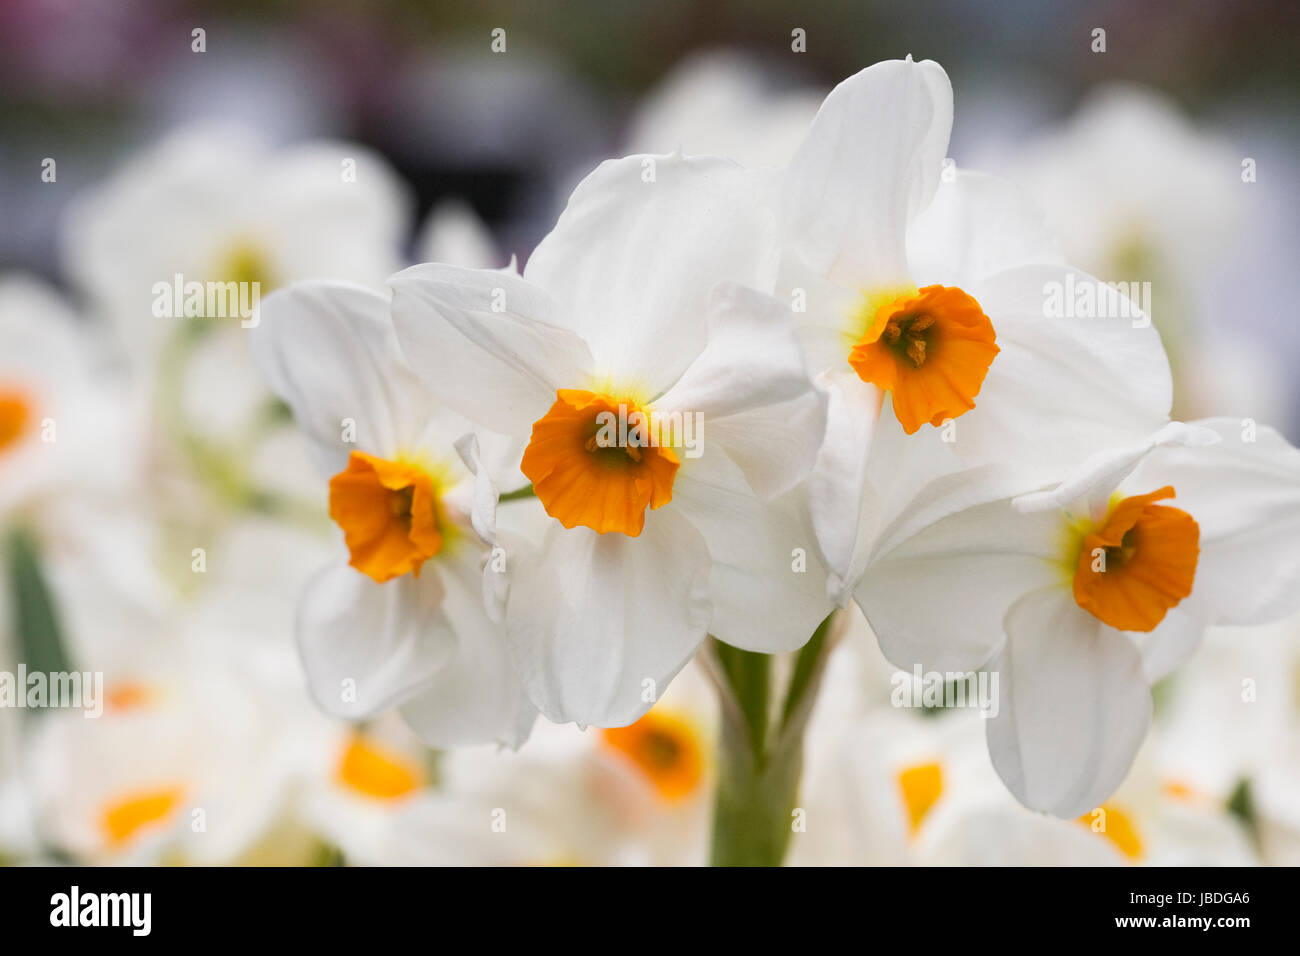 Narcissus 'Geranium' flowers. Stock Photo